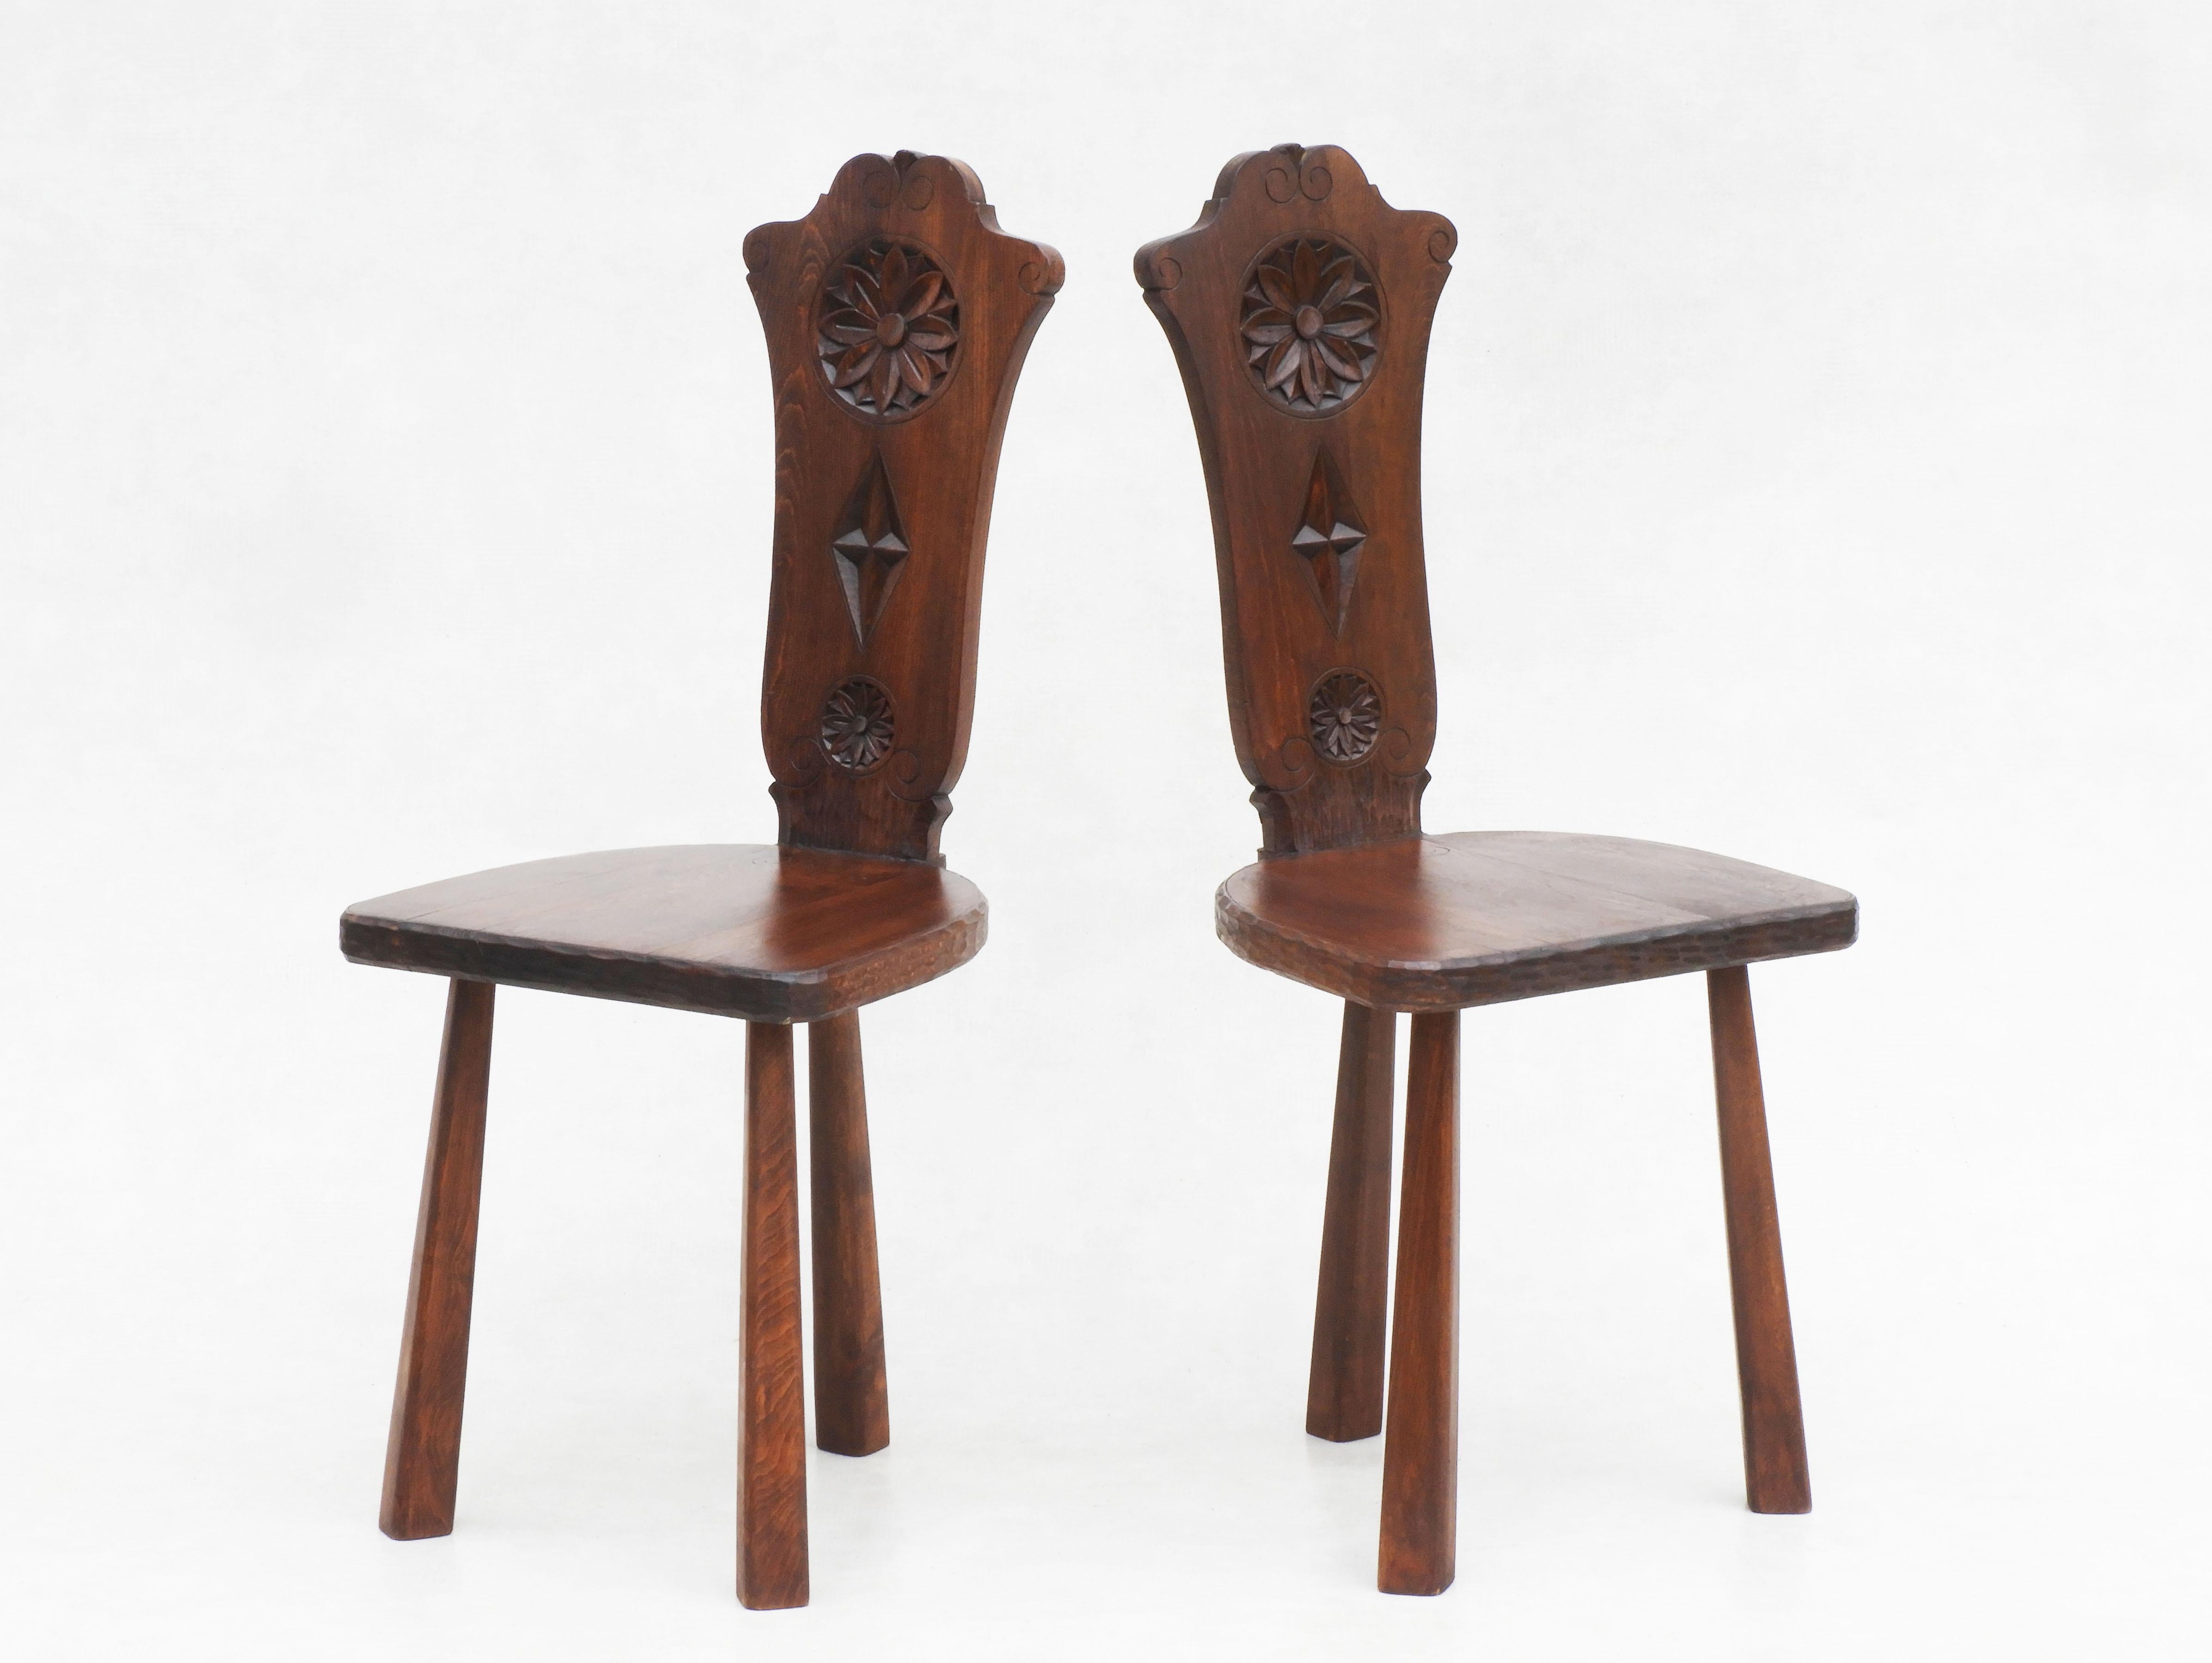 20th Century Pair of Basque Tripod Chairs 1950s European Folk Art For Sale